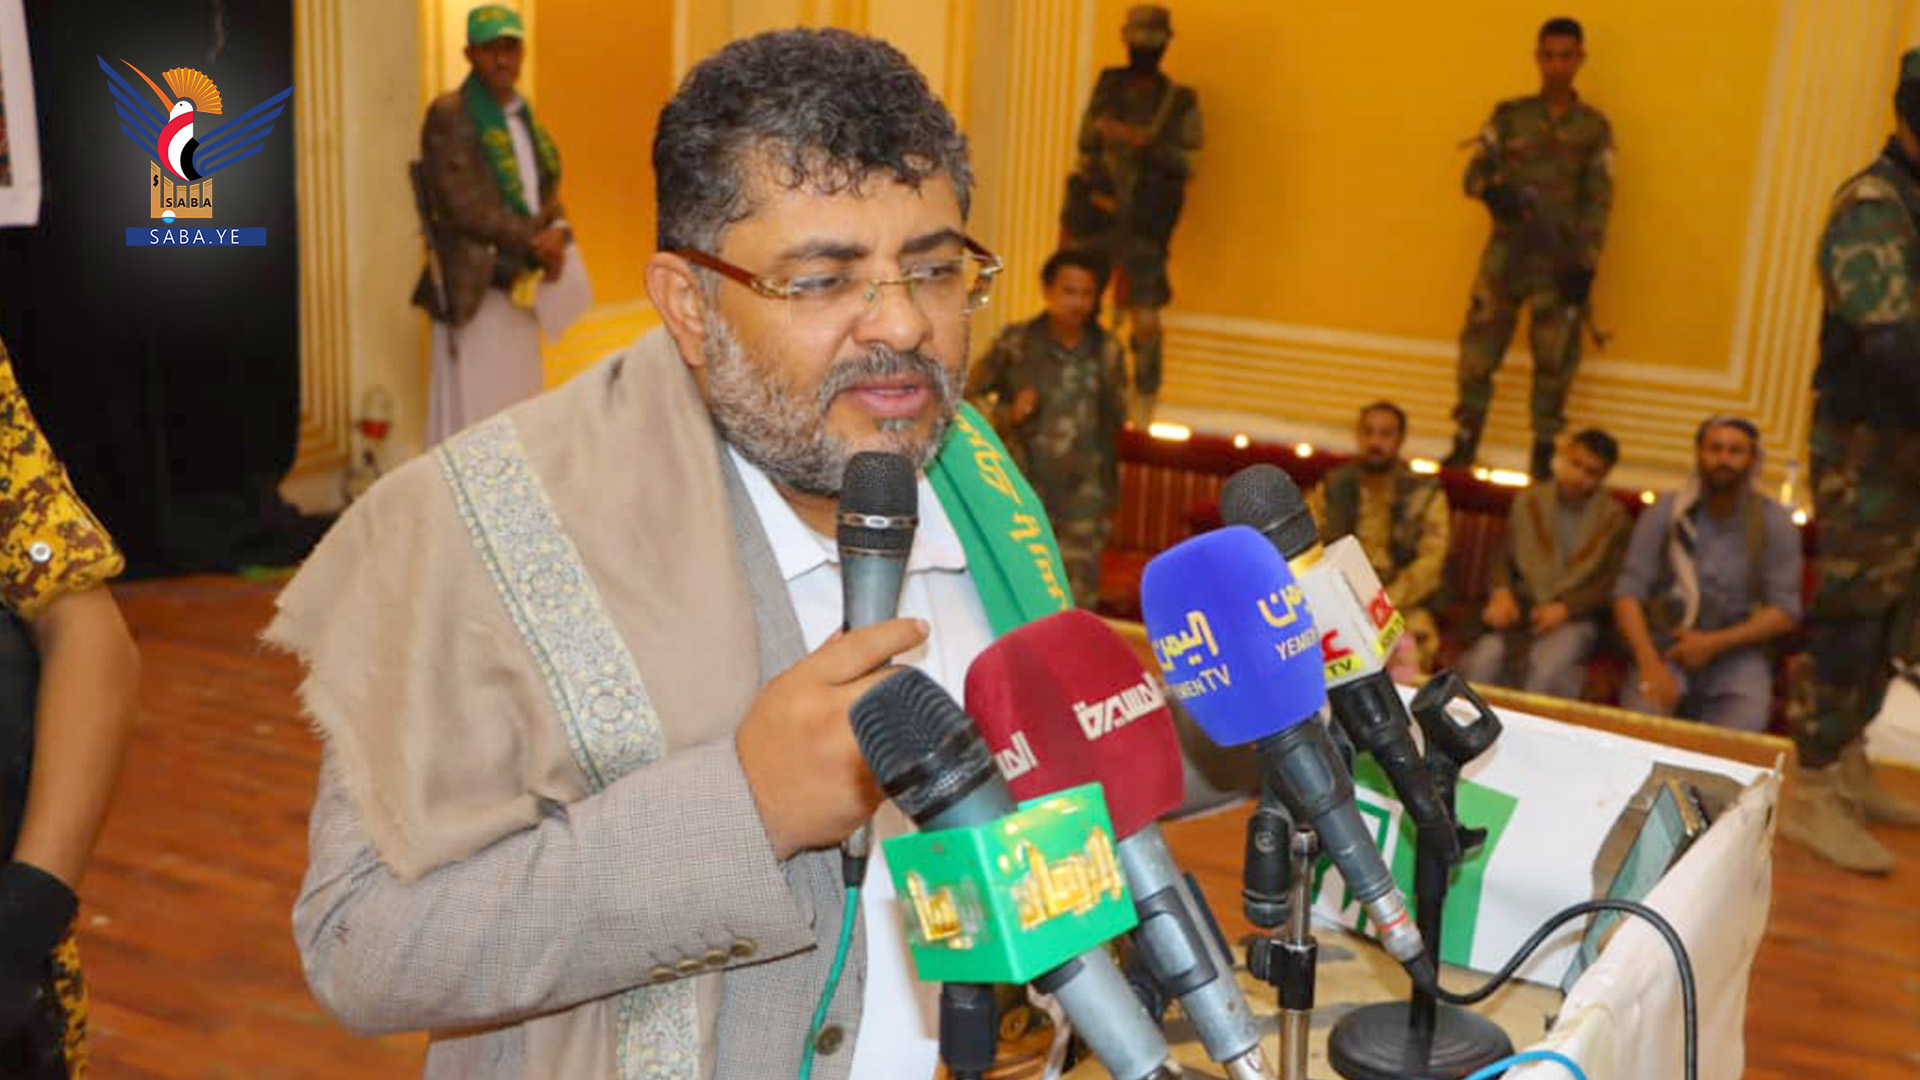 عضو المجلس السياسي الأعلى محمد علي الحوثي (سبأ)